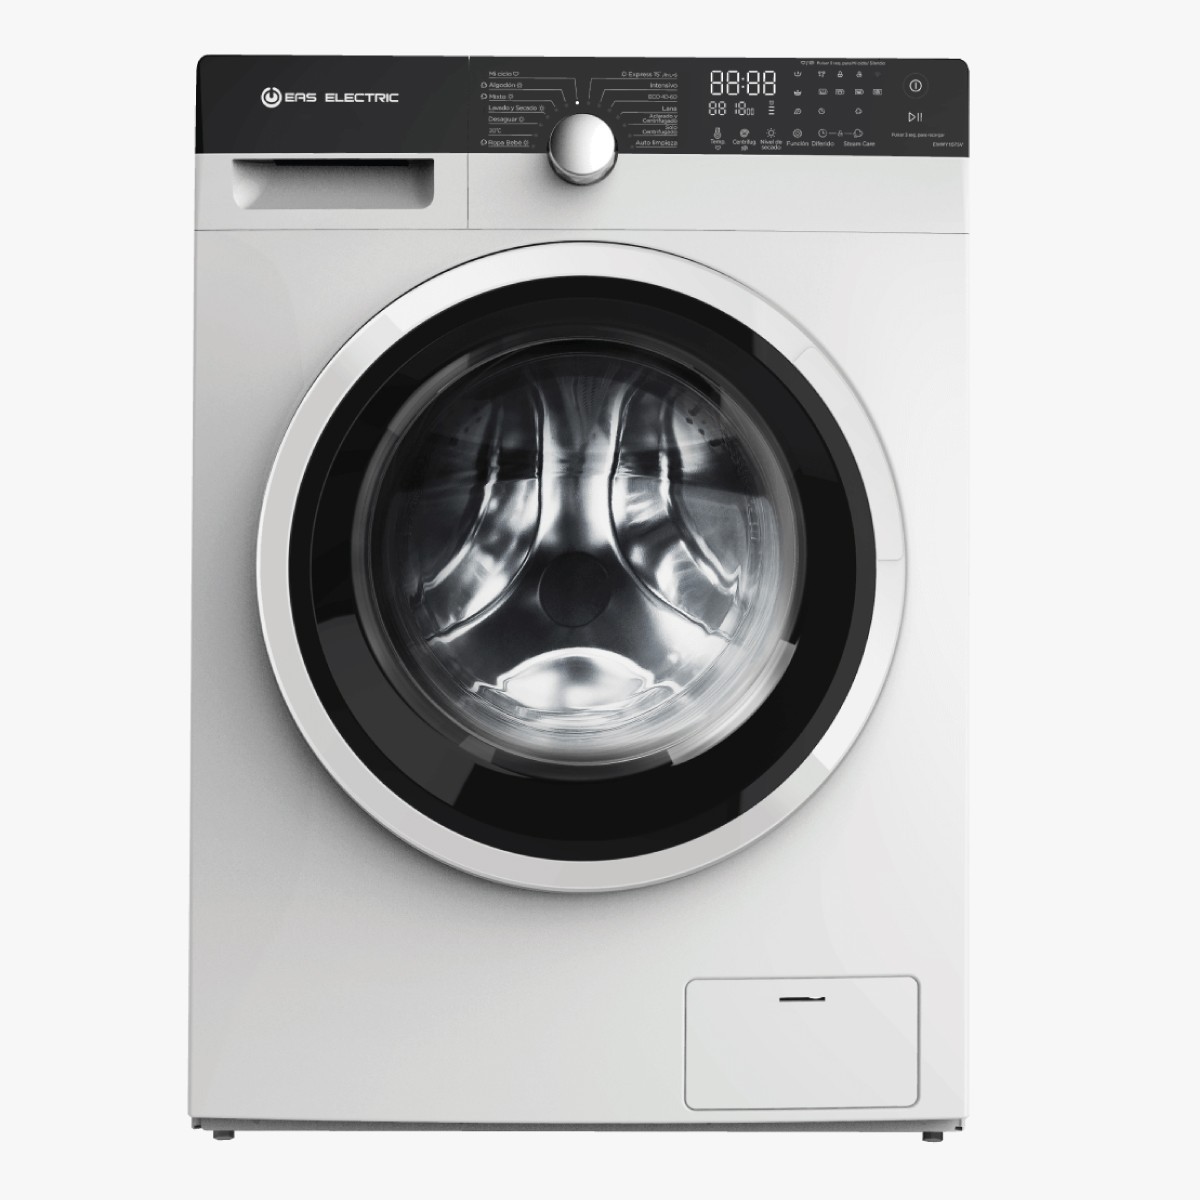 Lavadora y secadora juntas: Opiniones, ventajas y precios